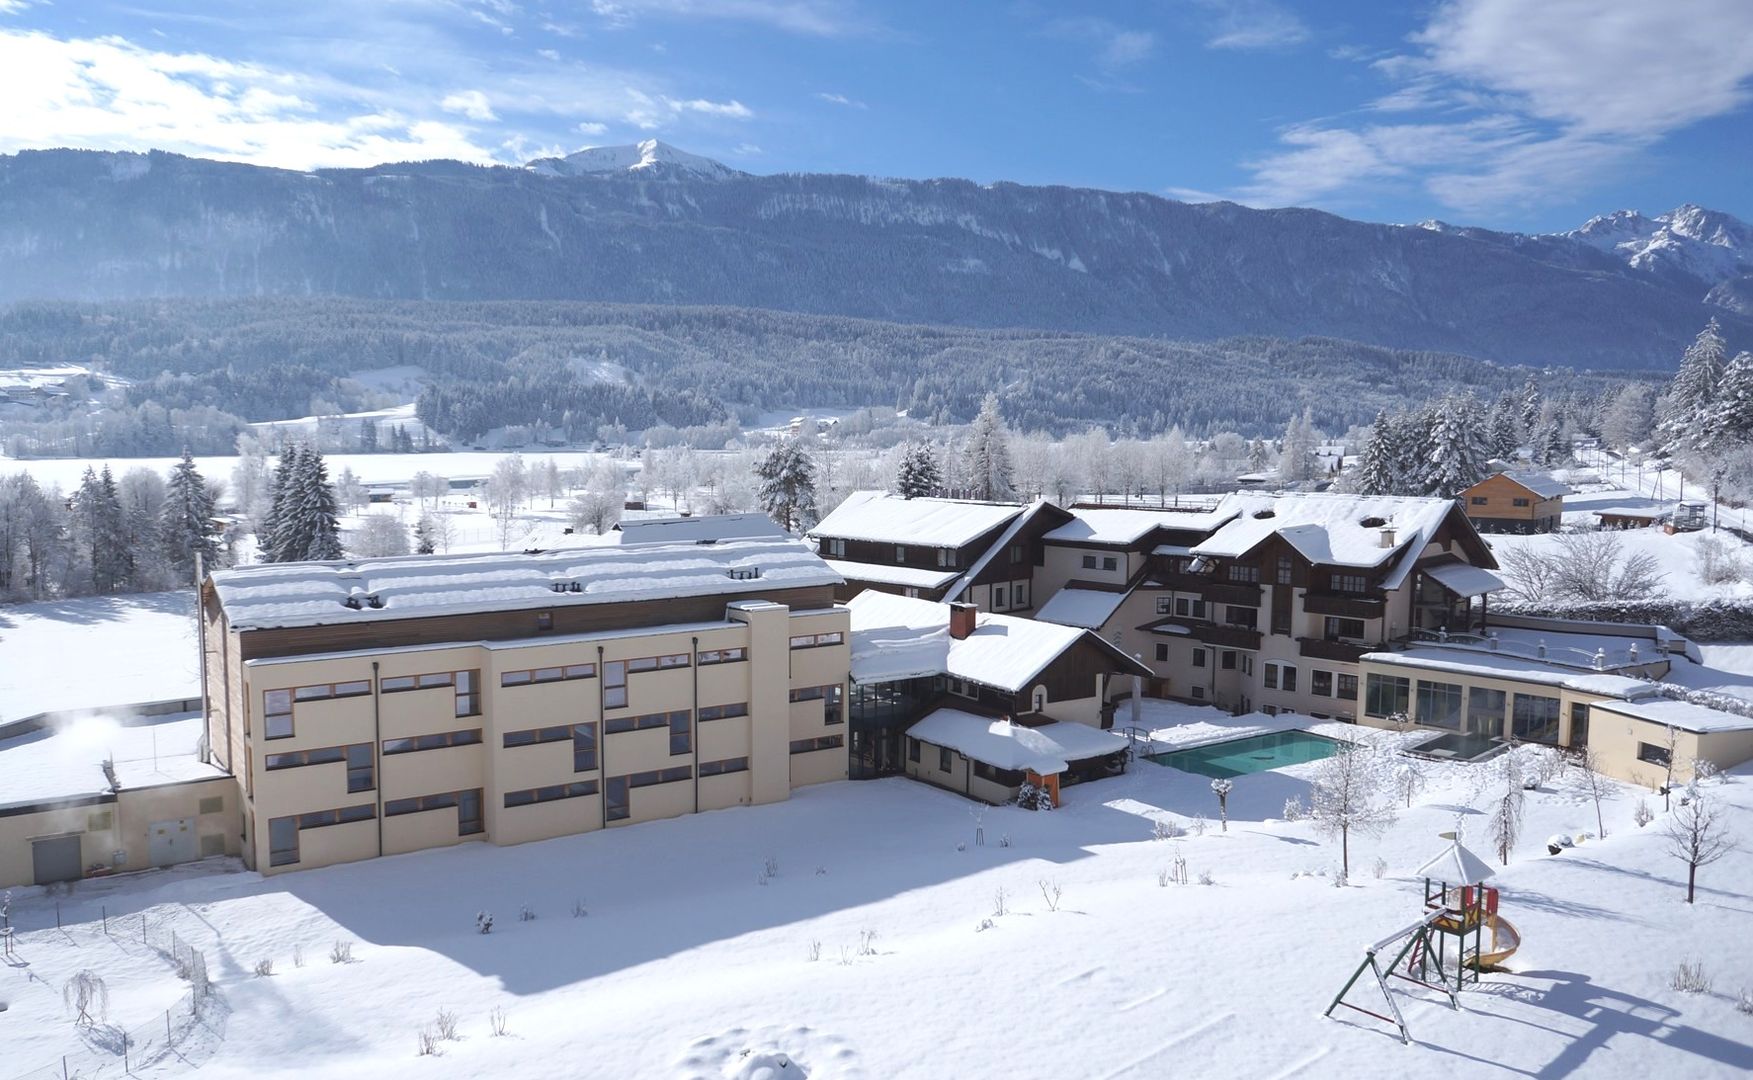 Meer info over Alpen Adria Hotel & SPA  bij Wintertrex